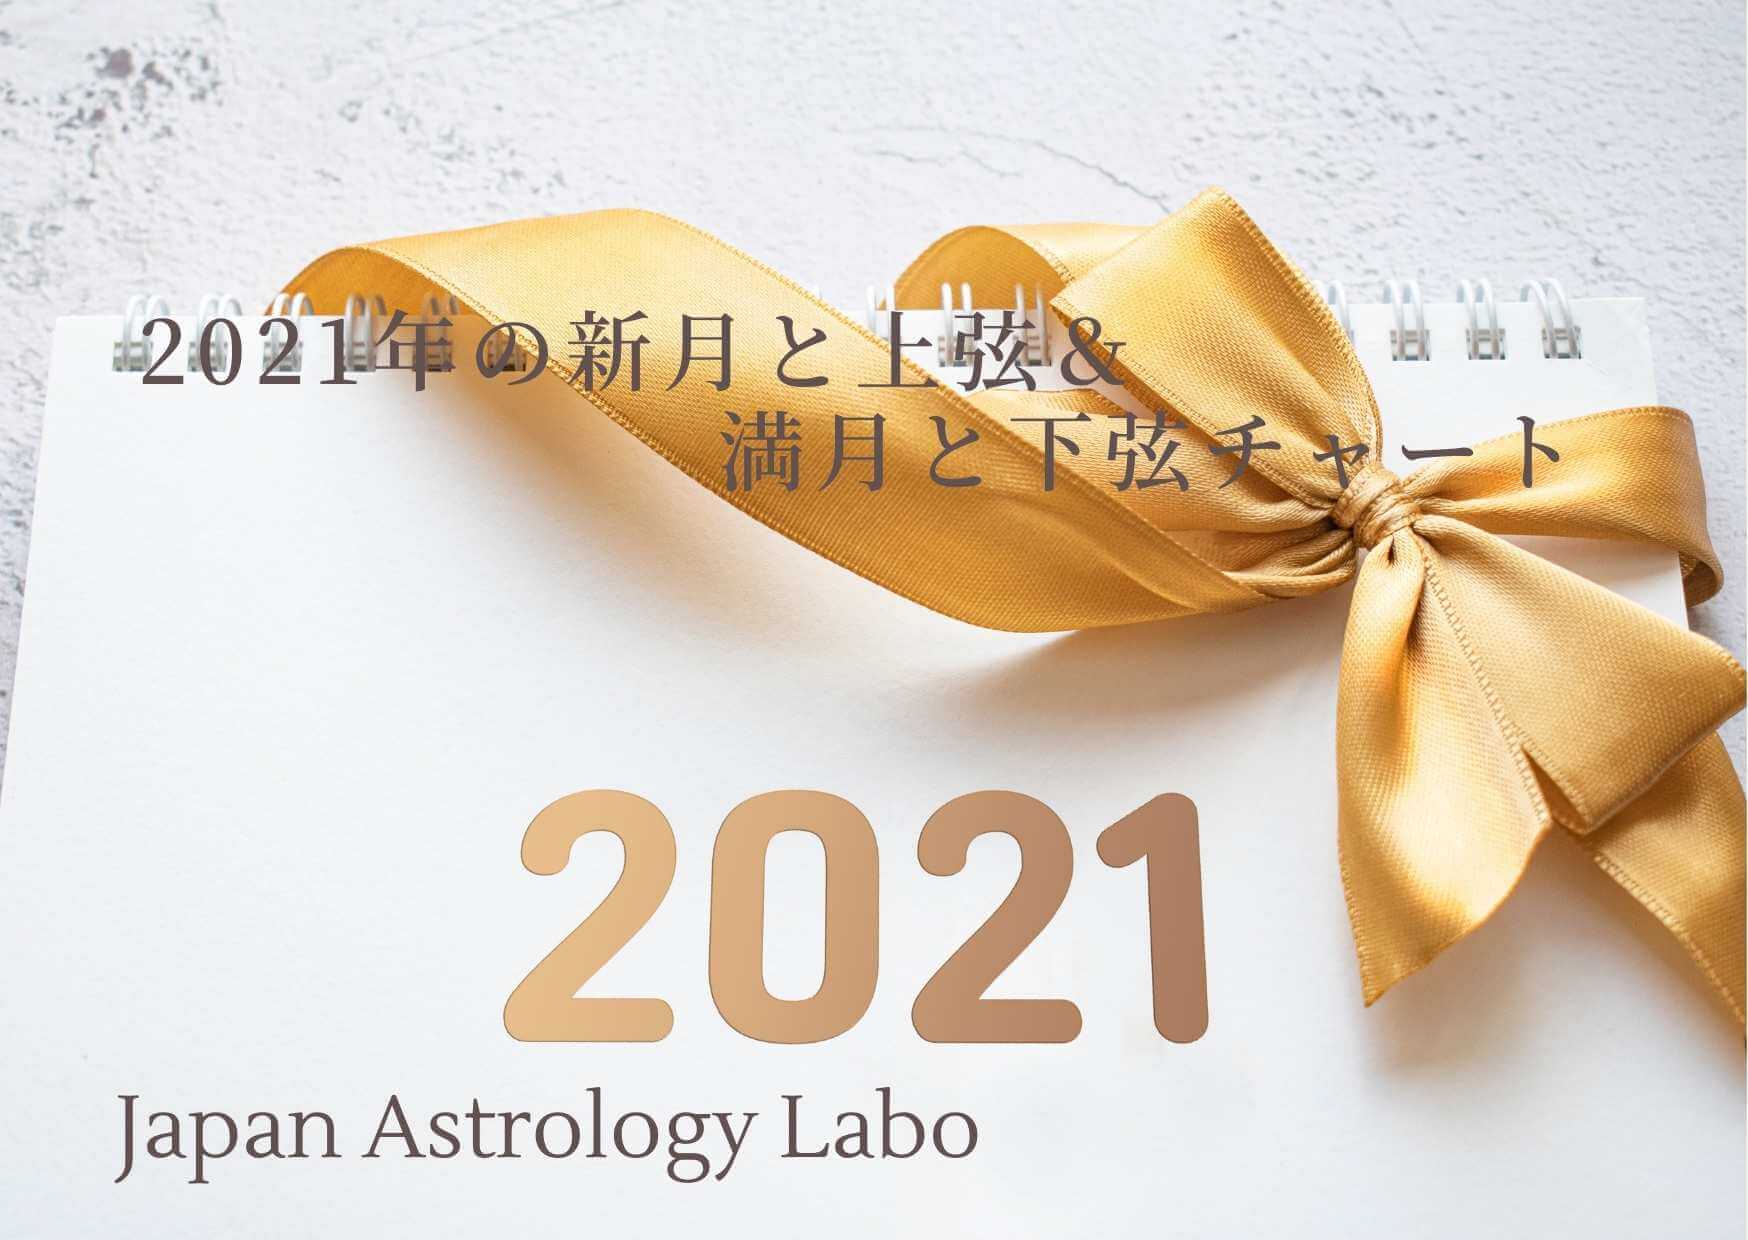 https://japan-astrology-labo.com/newmoon-fullmoon-calendar-2021/